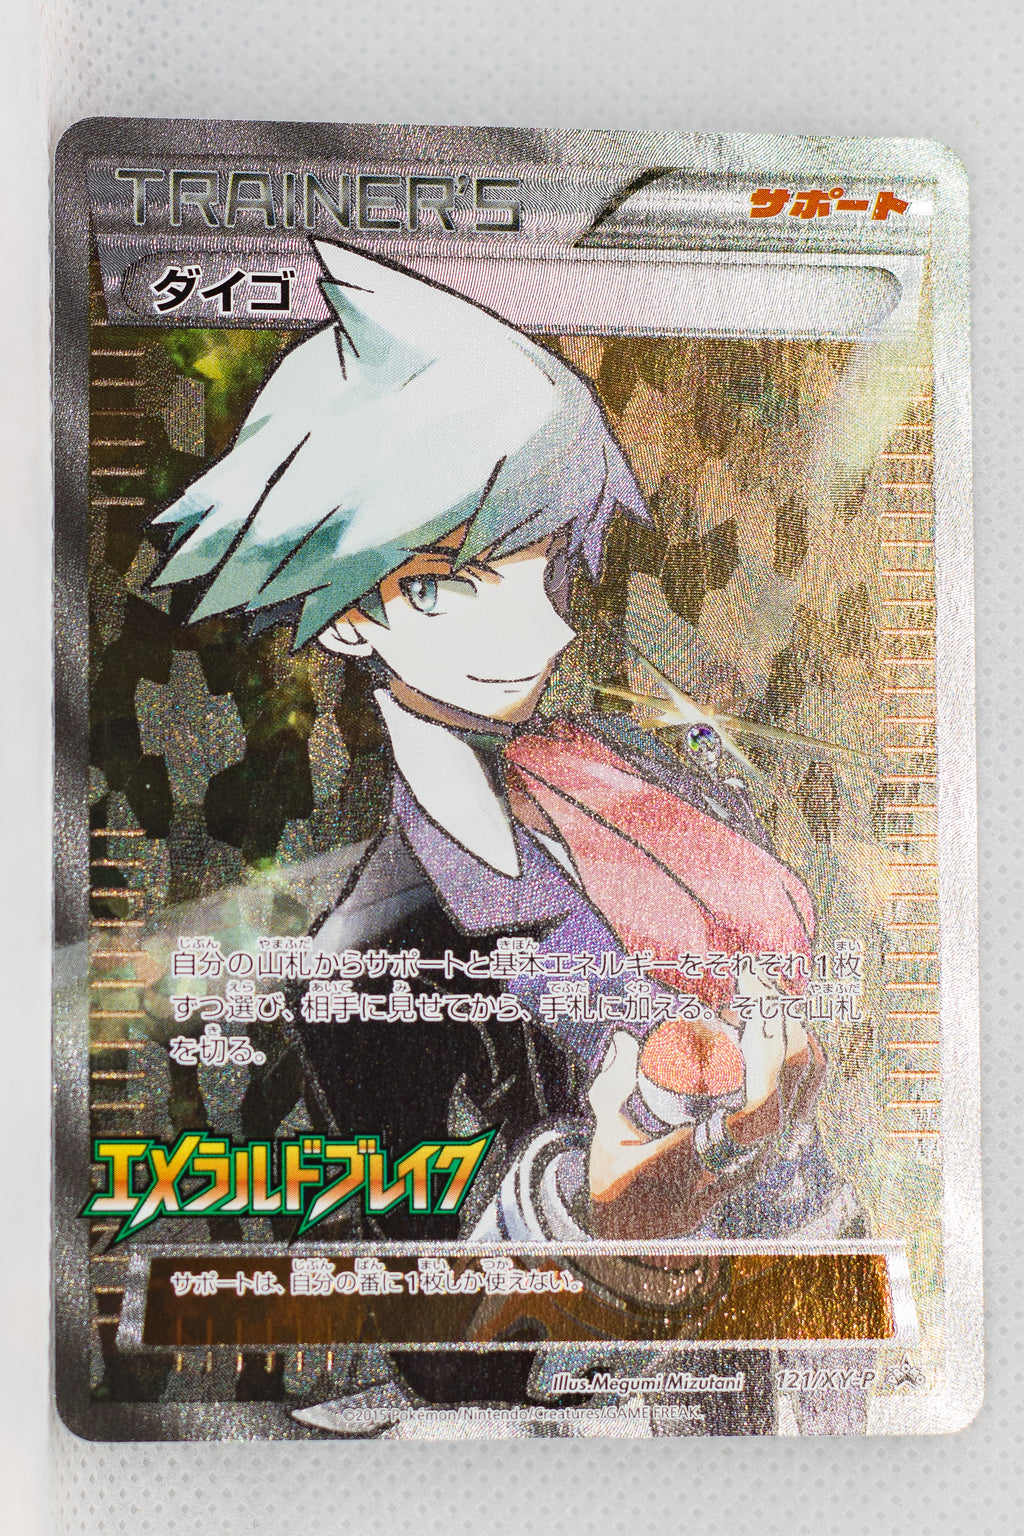 121/XY-P	 Steven Pokémon Centre Emerald Break Booster Box purchase (March 14, 2015) Holo